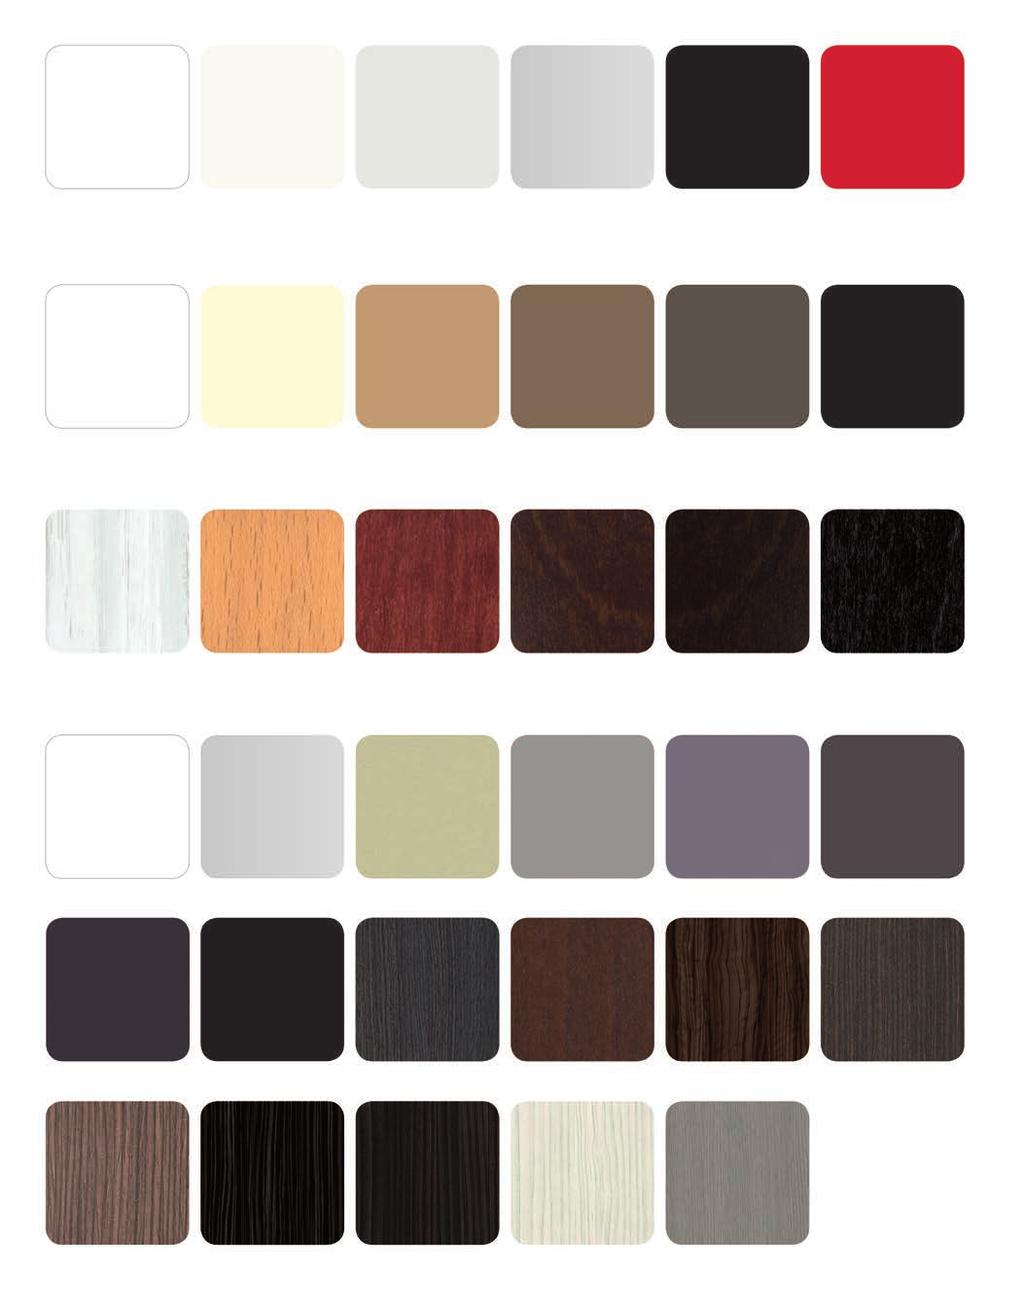 kolory płyt kolory płyt mdf lakierowanych biały (RAL 9003) ecru (RAL 9016) szary (RAL 7035) aluminium (RAL 9006) czarny (RAL 9005) czerwony (RAL 3001) kolory płyt akrylowych biały cream capuccino